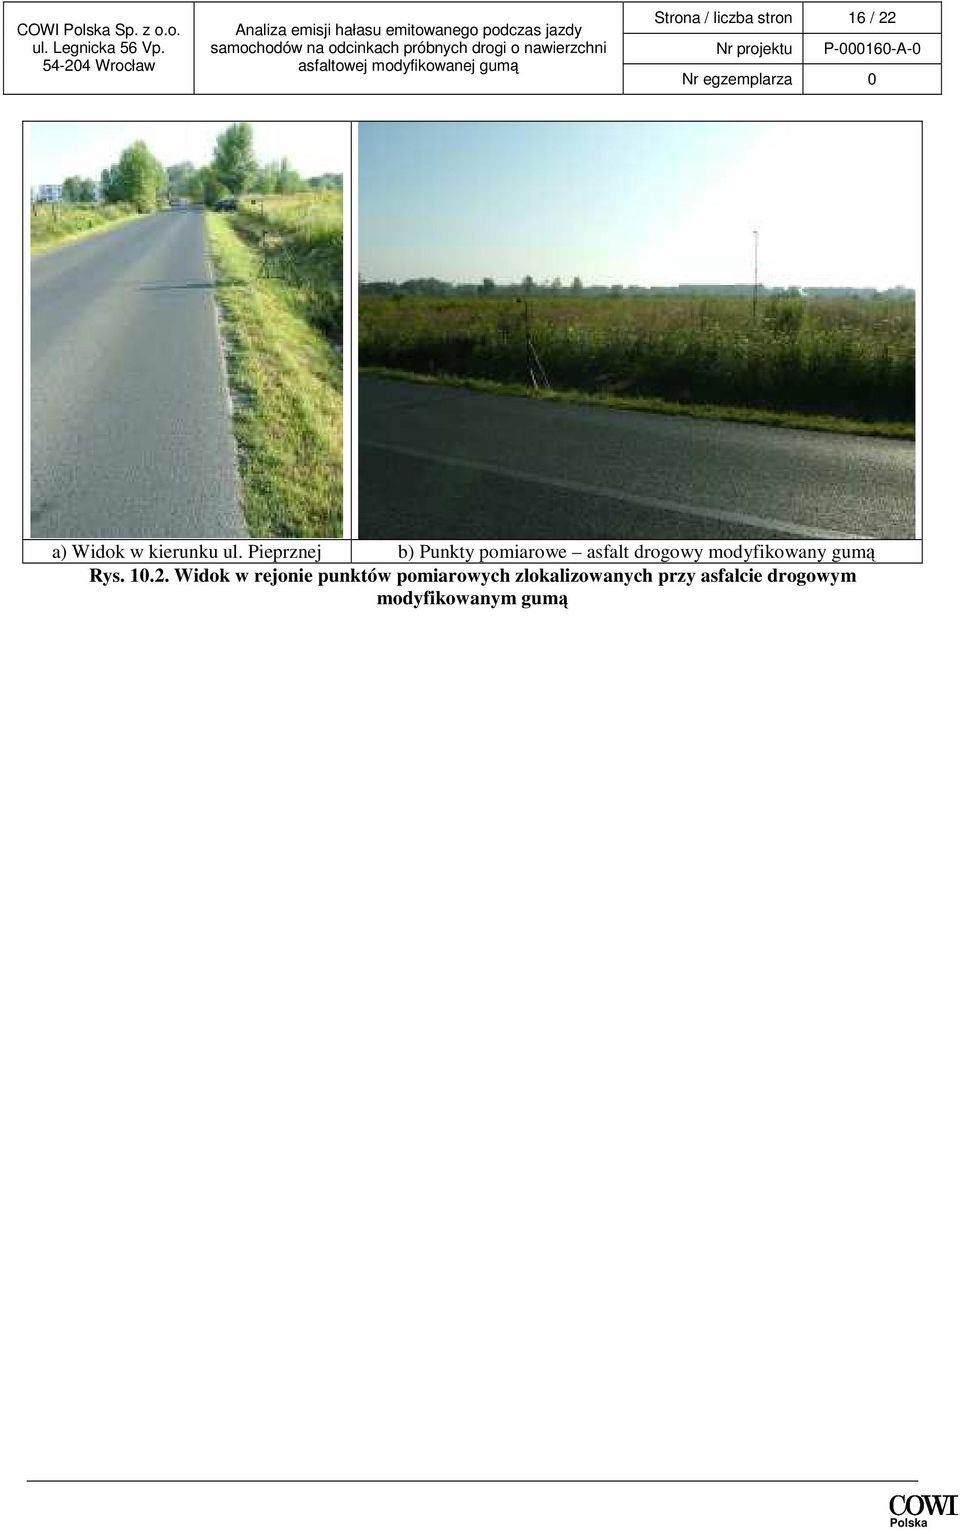 Pieprznej b) Punkty pomiarowe asfalt drogowy modyfikowany